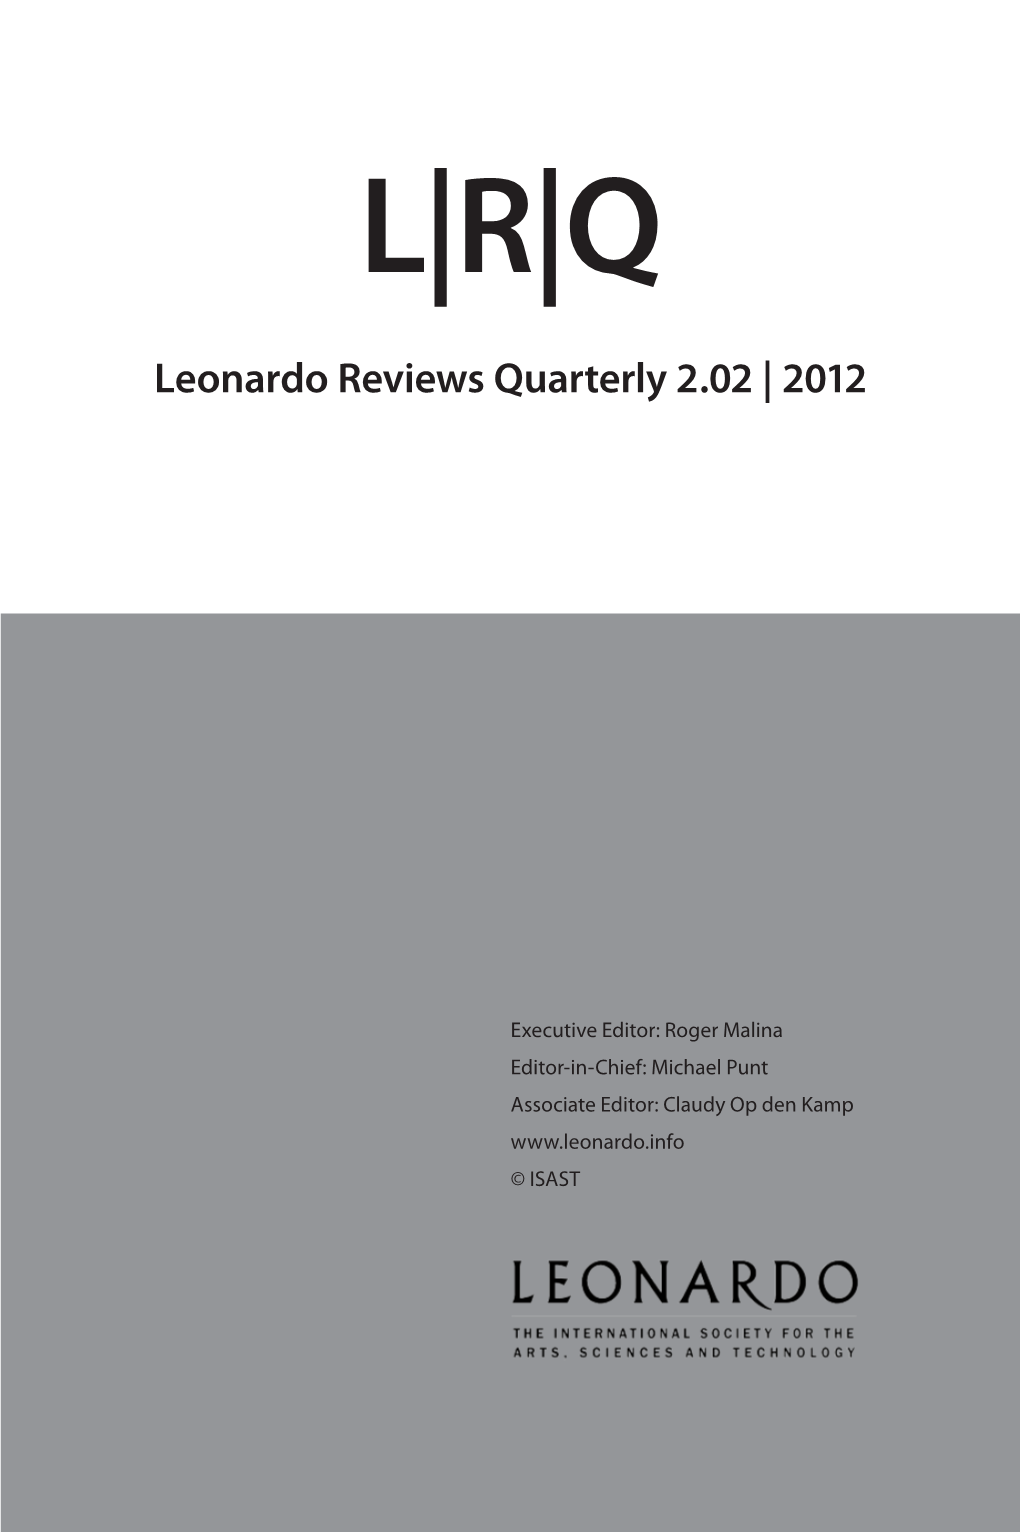 Leonardo Reviews Quarterly 2.02 | 2012